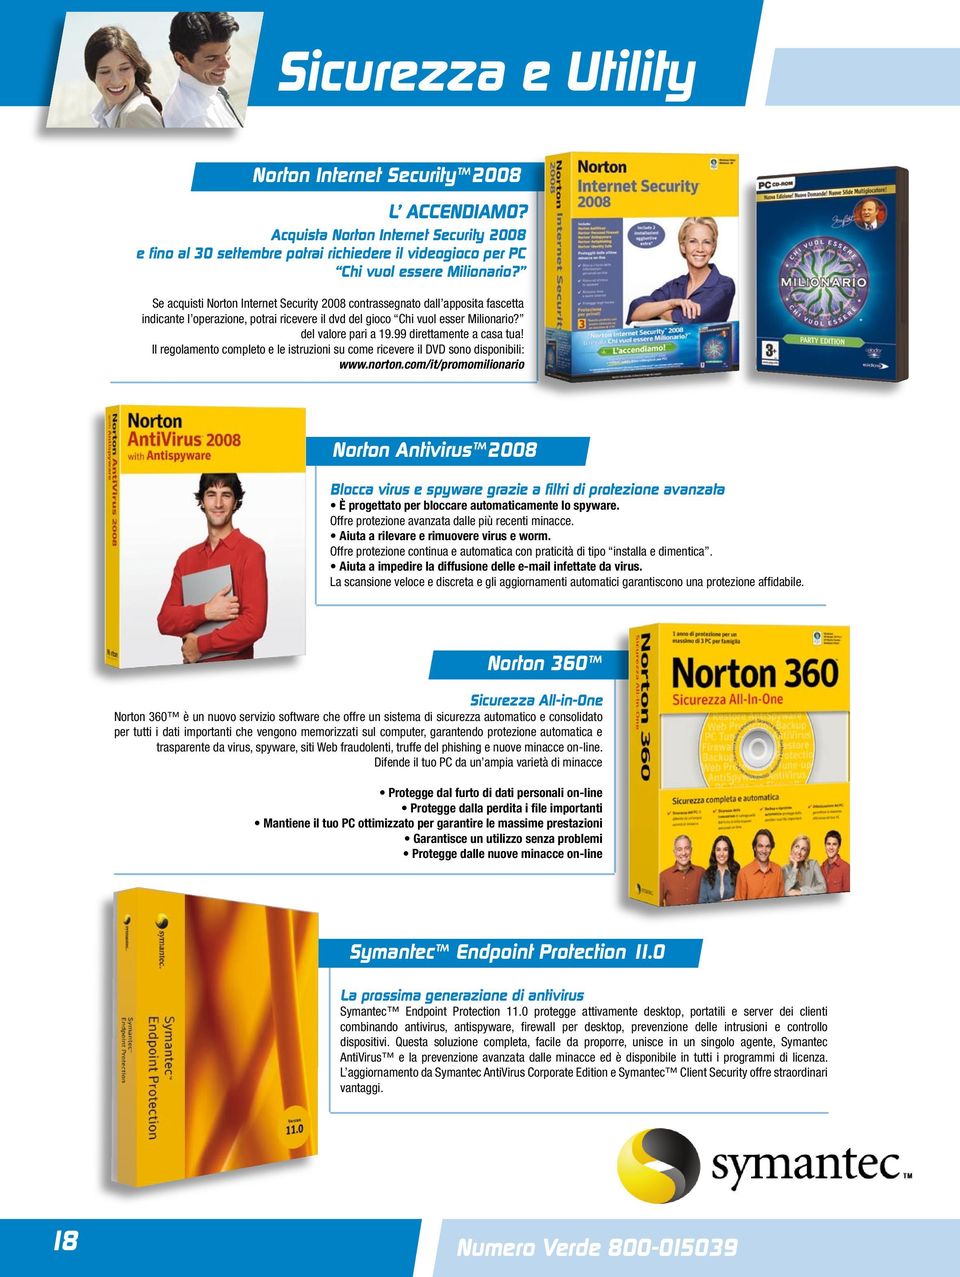 99 direttamente a casa tua! Il regolamento completo e le istruzioni su come ricevere il DVD sono disponibili: www.norton.